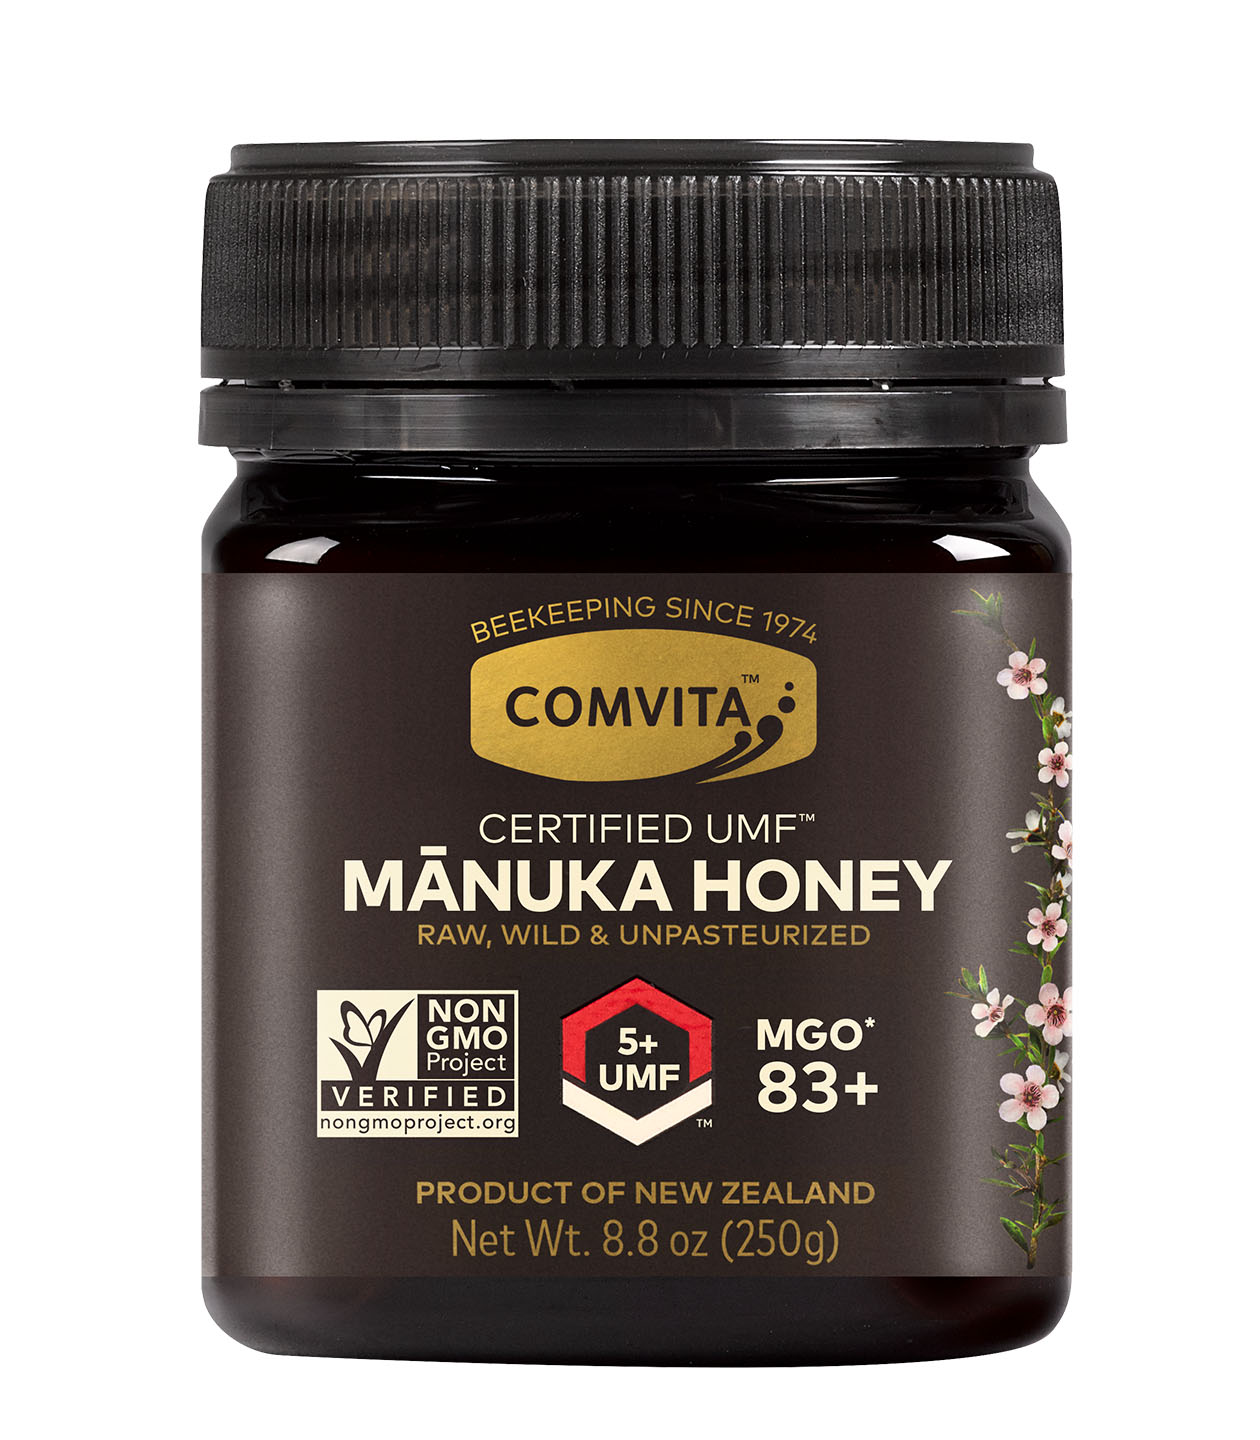 UMF 5+ Manuka Honey